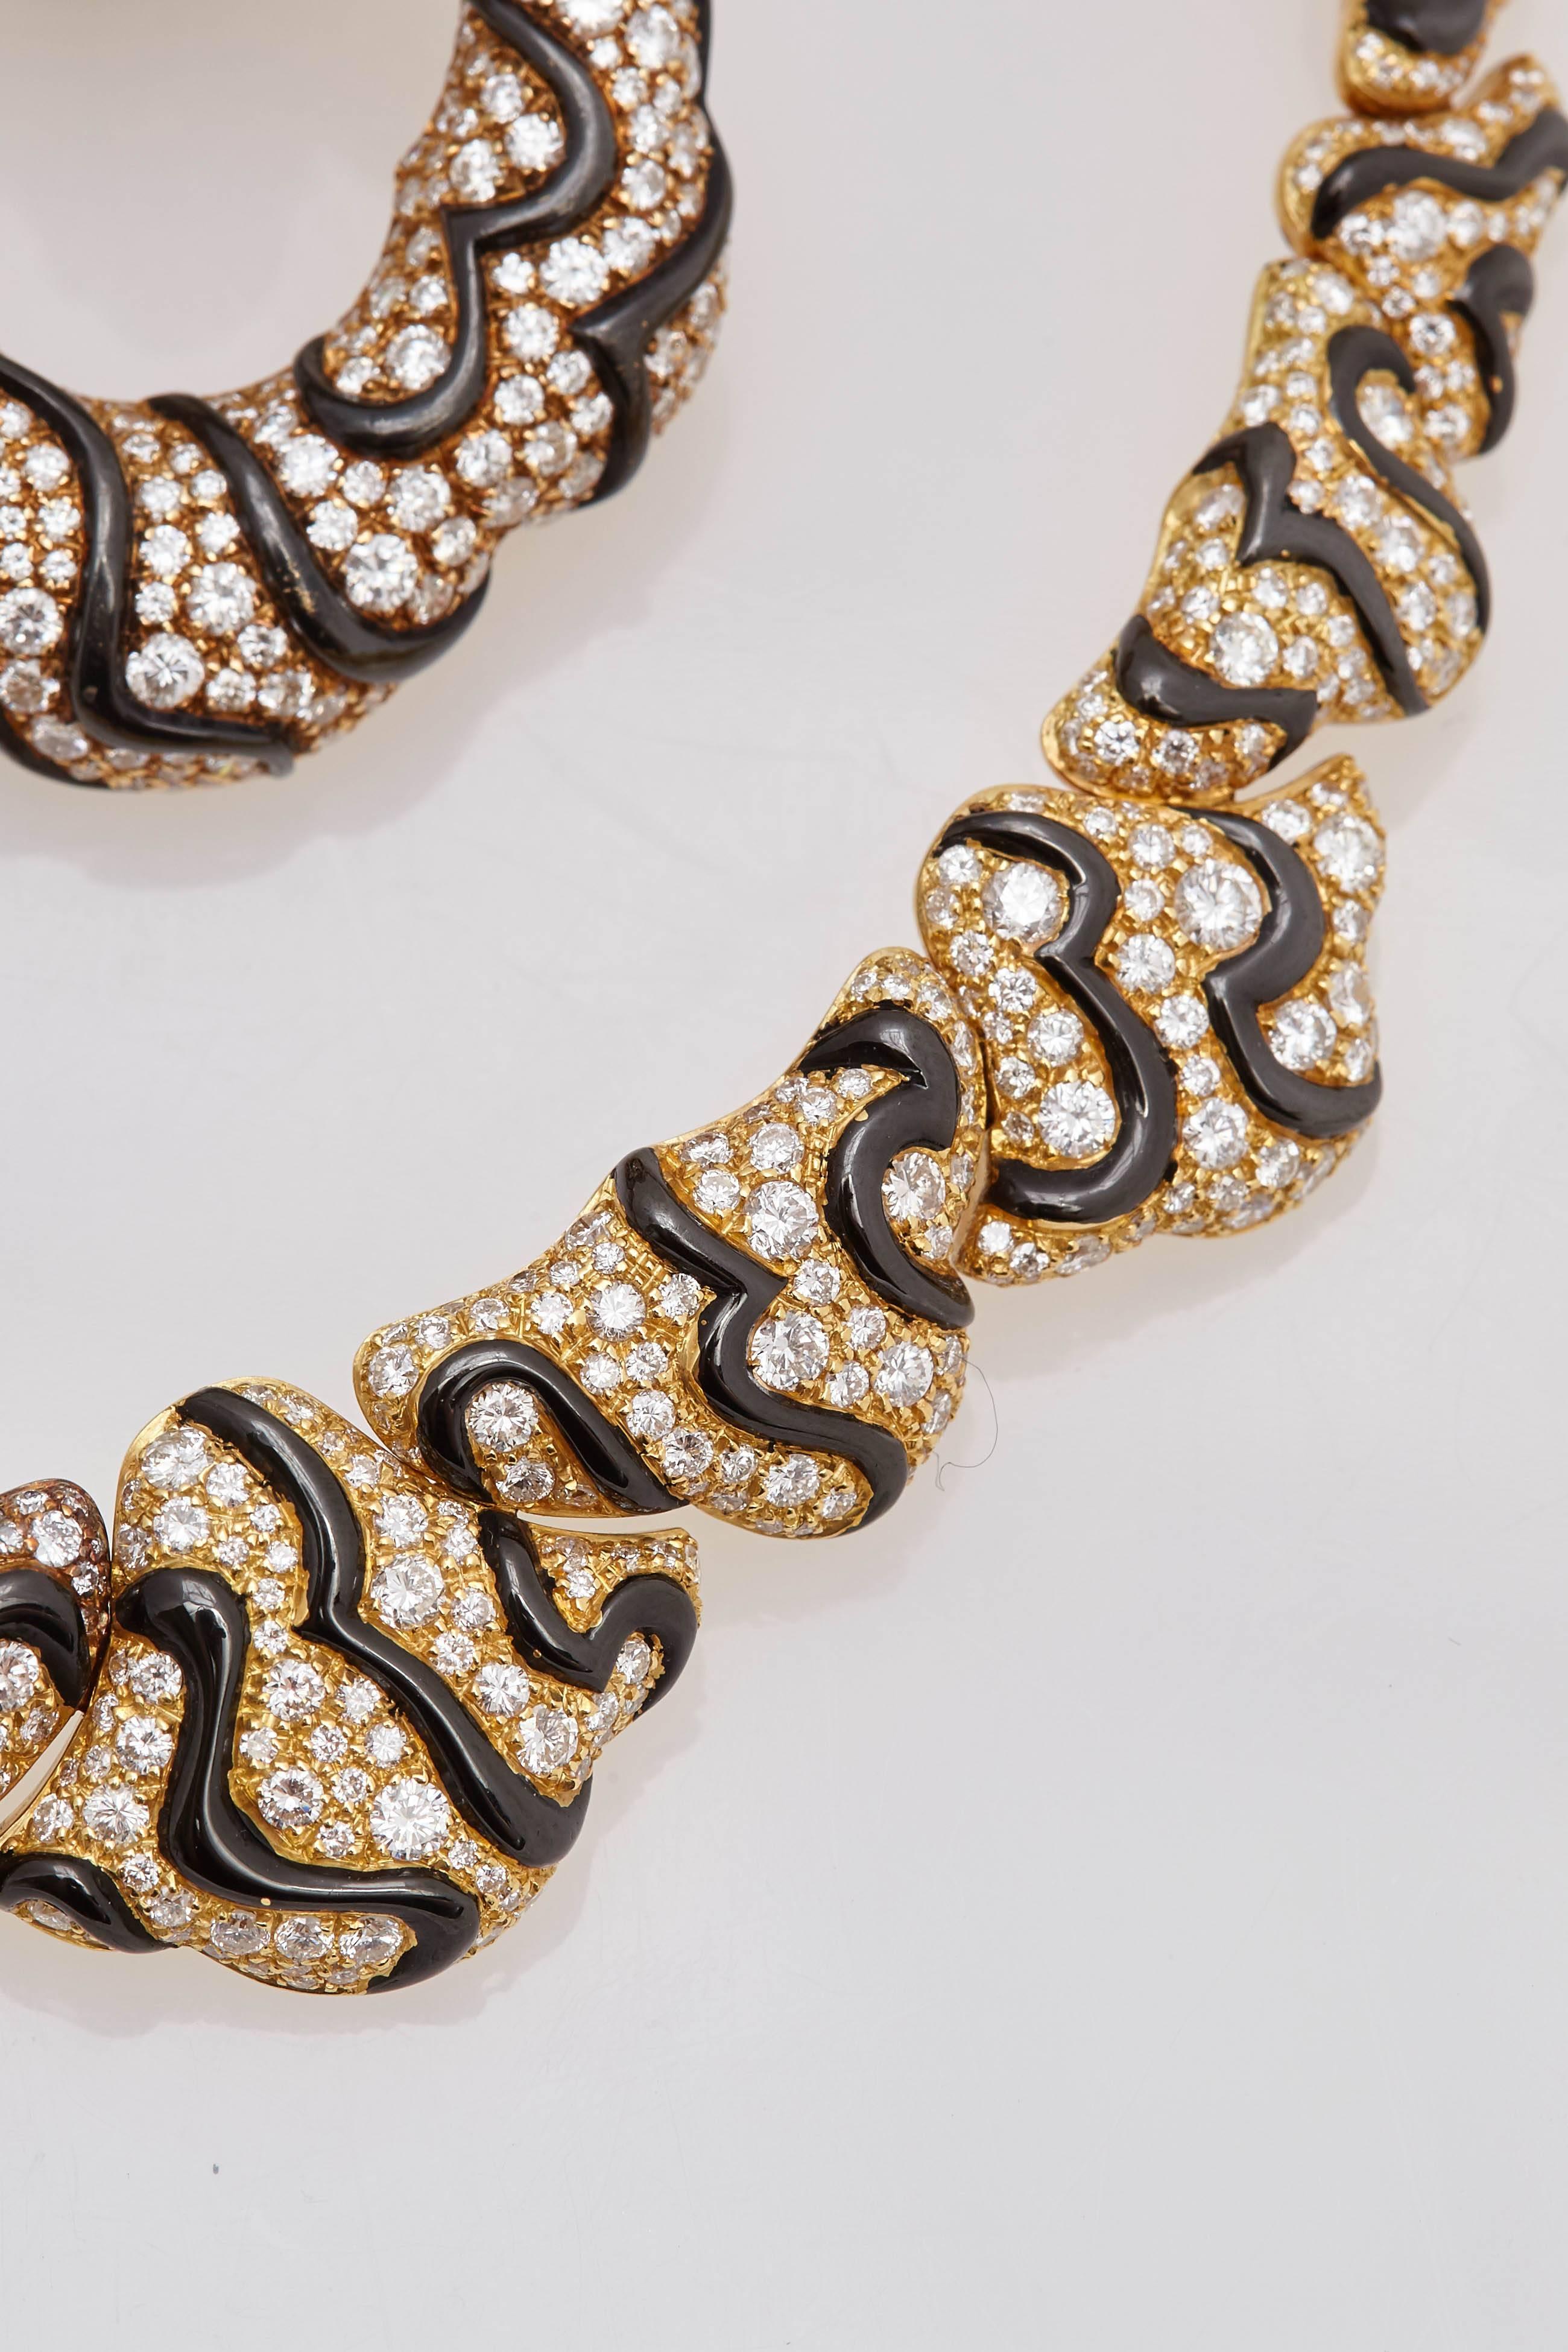 Ein wunderschönes, einzigartiges Collier von Marina B aus 18 Karat Gelbgold und geschwärztem Gold, verziert mit hochwertigen Diamanten im Brillantschliff. Hergestellt in Italien, um 1983

Bitte beachten Sie, dass die Ohrringe auf dem Bild verkauft